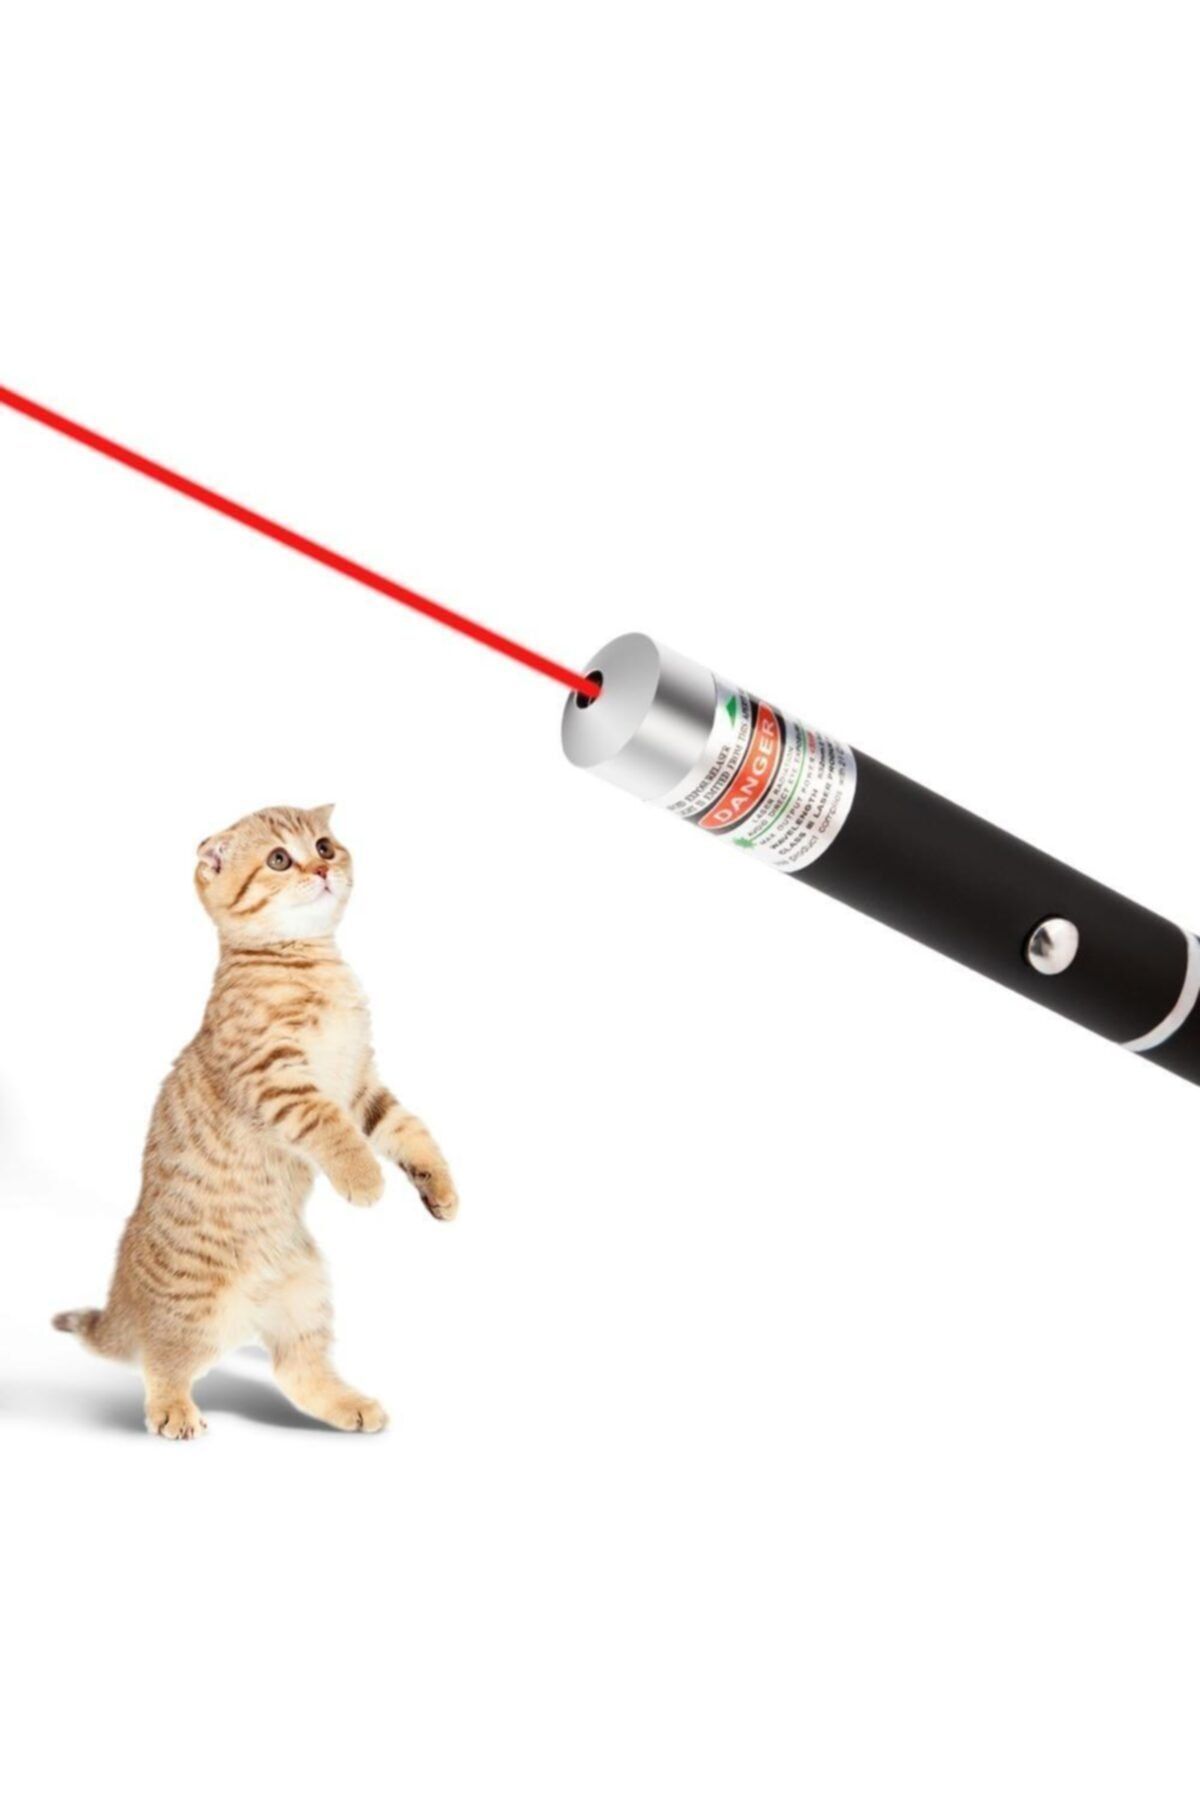 SHAVER Kedi Lazer 1 Adet Oyuncak Ledli Led Pilli Işıklı Ödül Çimi Mama Alıştırma Smokin Scottish Fold Cat